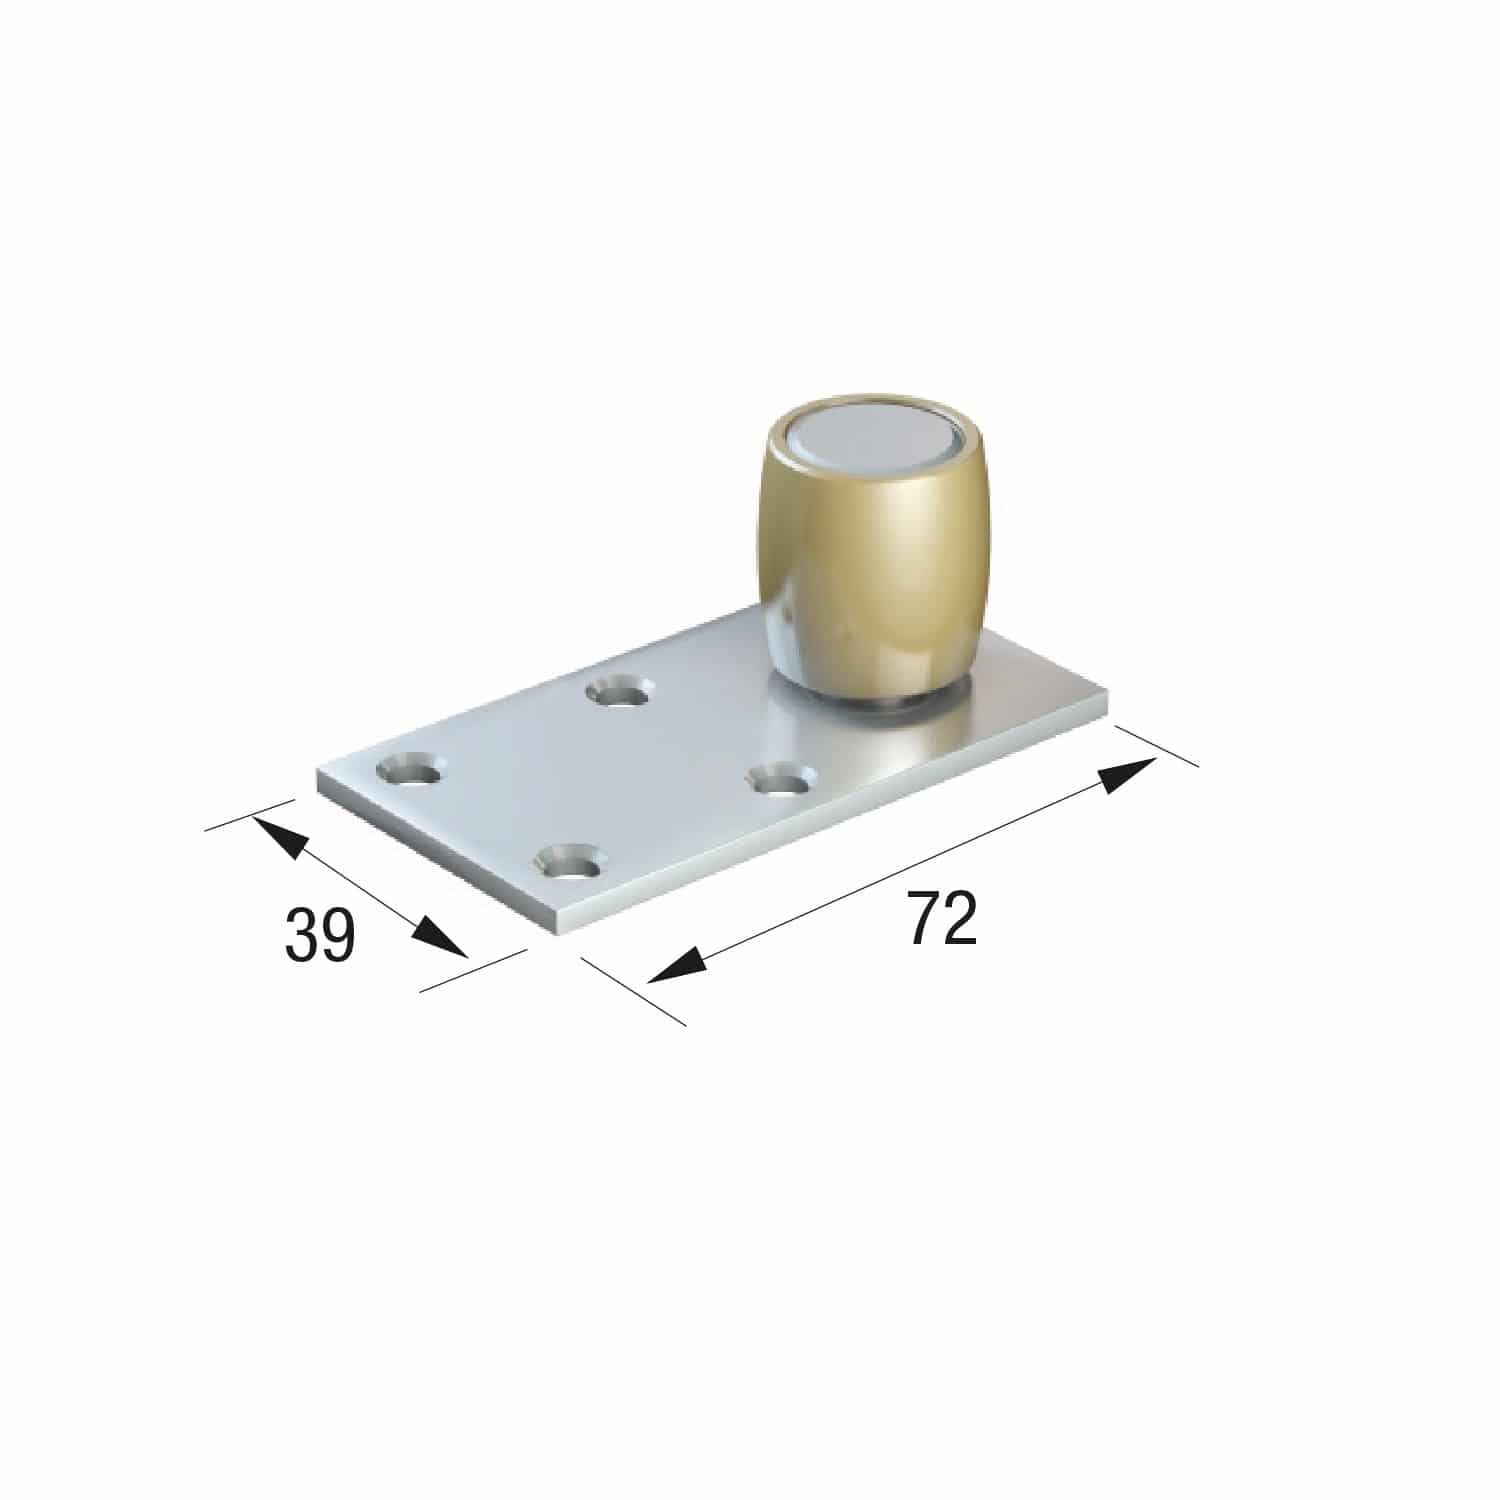 Series 50 20mm Diameter Brass Bottom Guide Roller, Offset On Flat Steel Plate